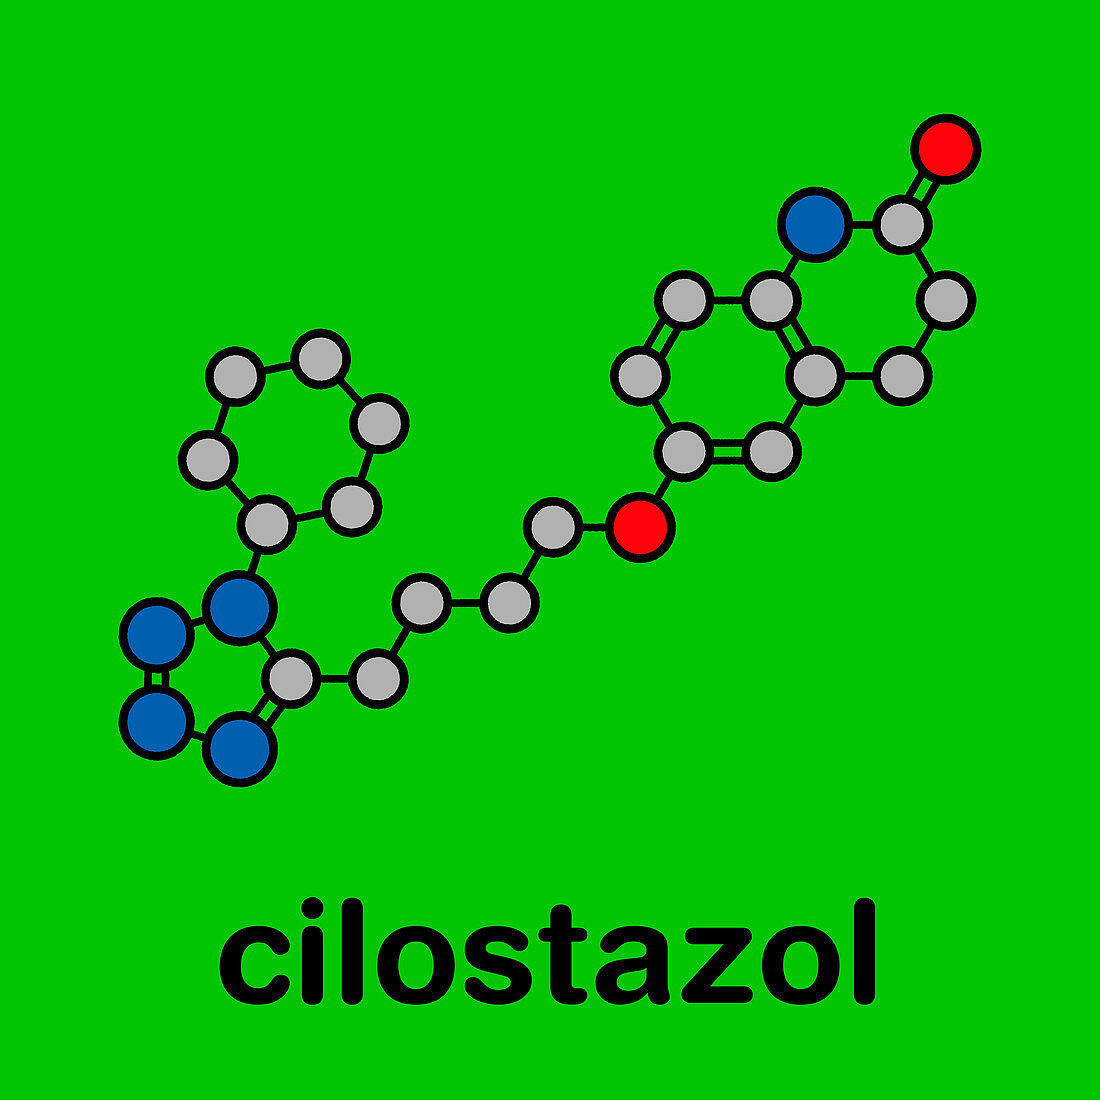 Cilostazol intermittent claudication drug, molecular model